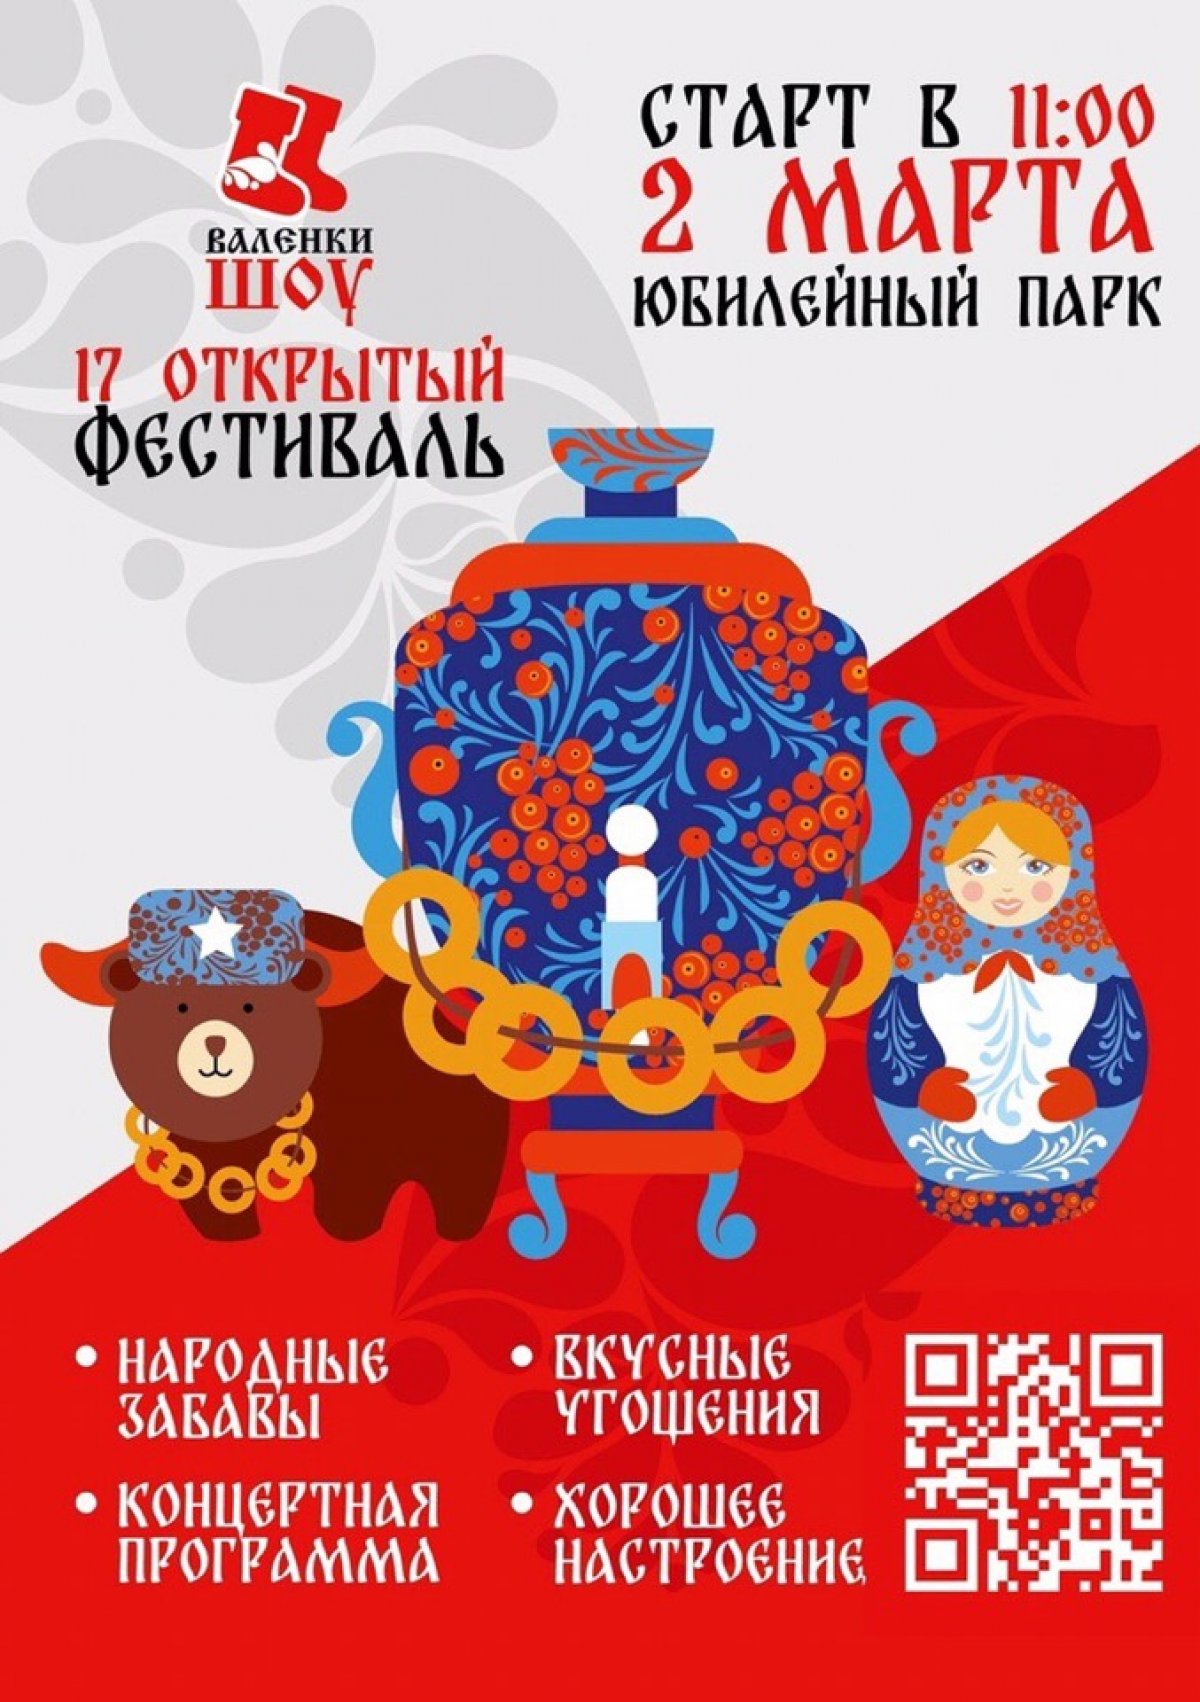 XVII МОЛОДЕЖНЫЙ ФЕСТИВАЛЬ "ВАЛЕНКИ-ШОУ 2019"